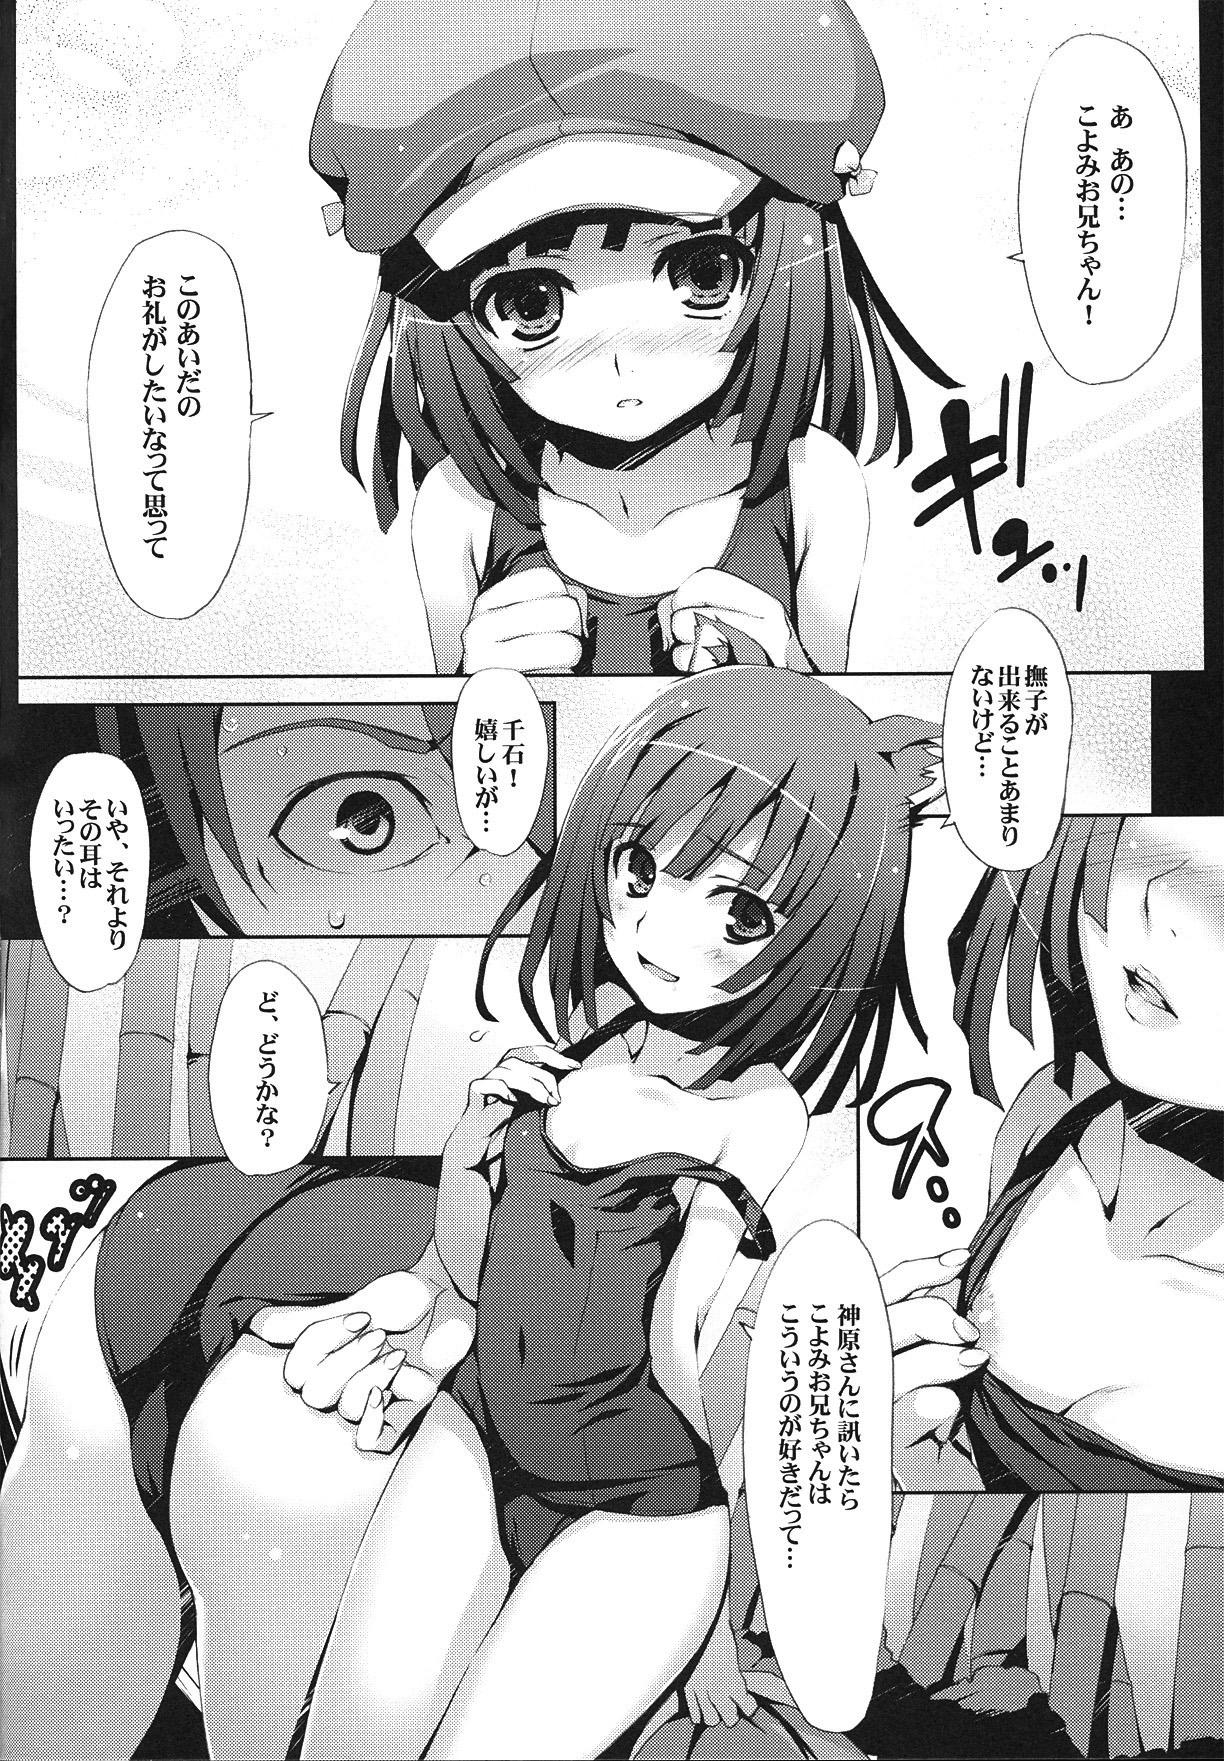 Weird Kaii no Shiwaza - Bakemonogatari Assfucking - Page 7